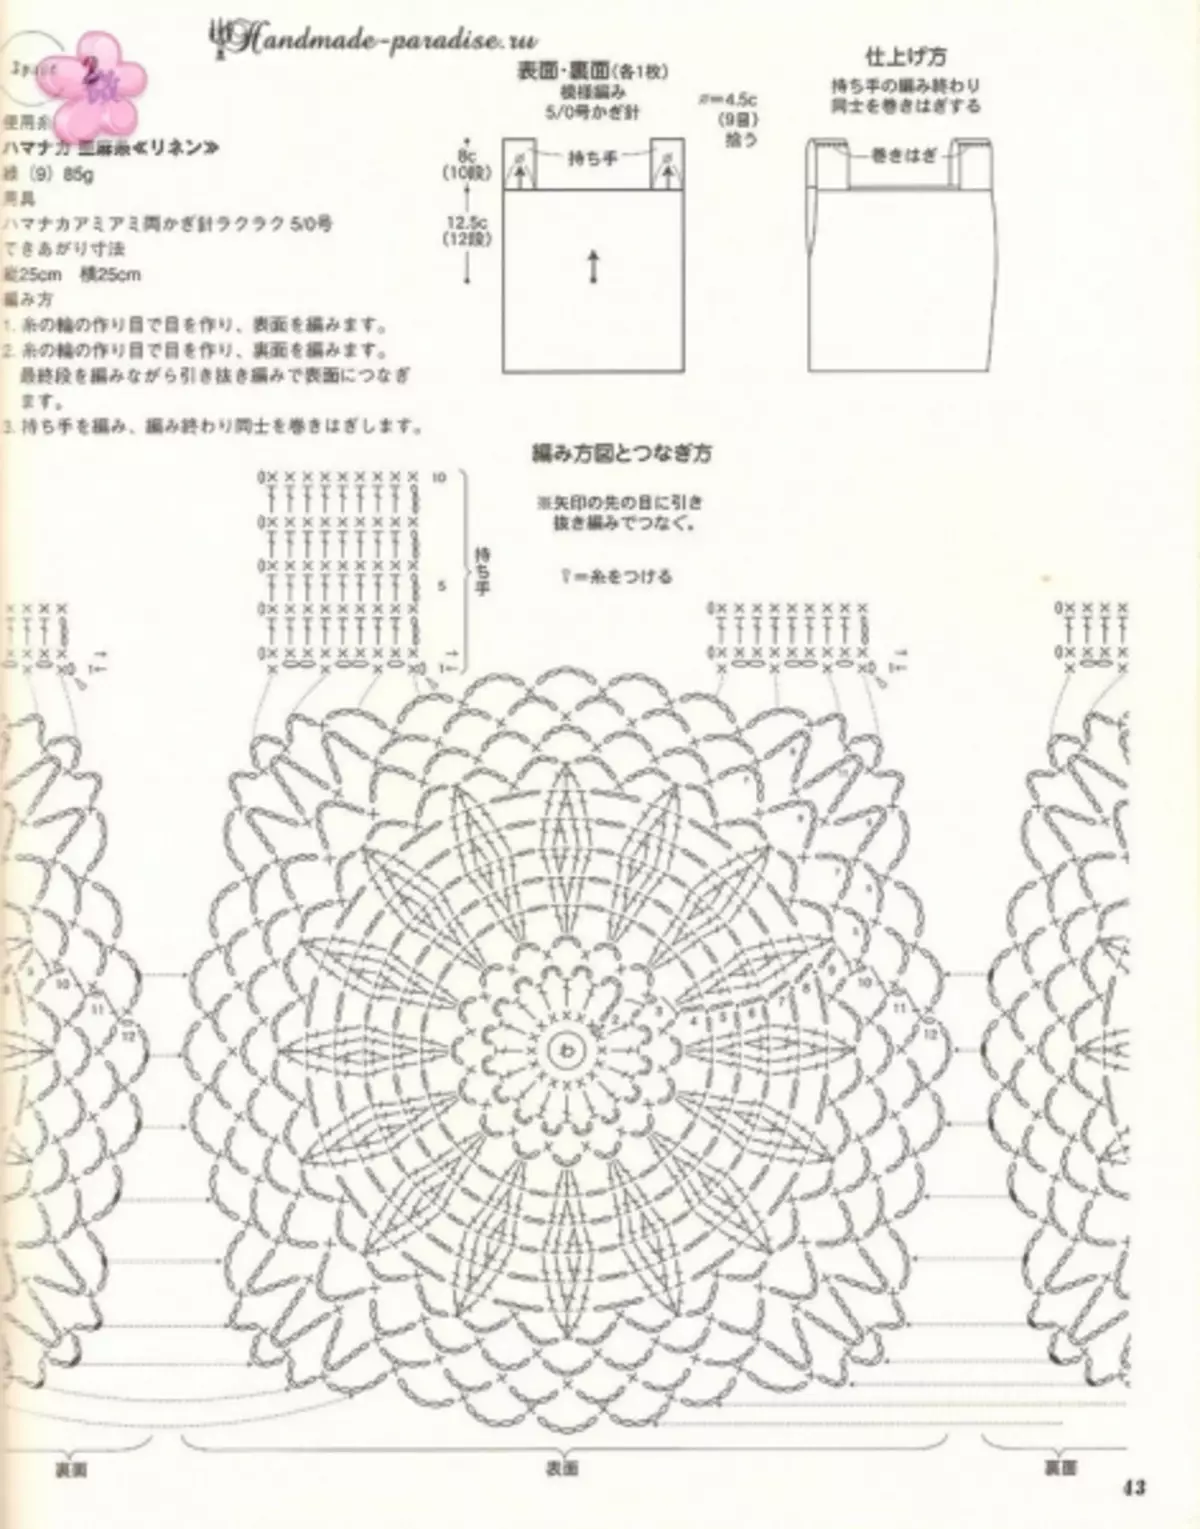 Crochet Summer Accessories. Japanese magazine with schemes